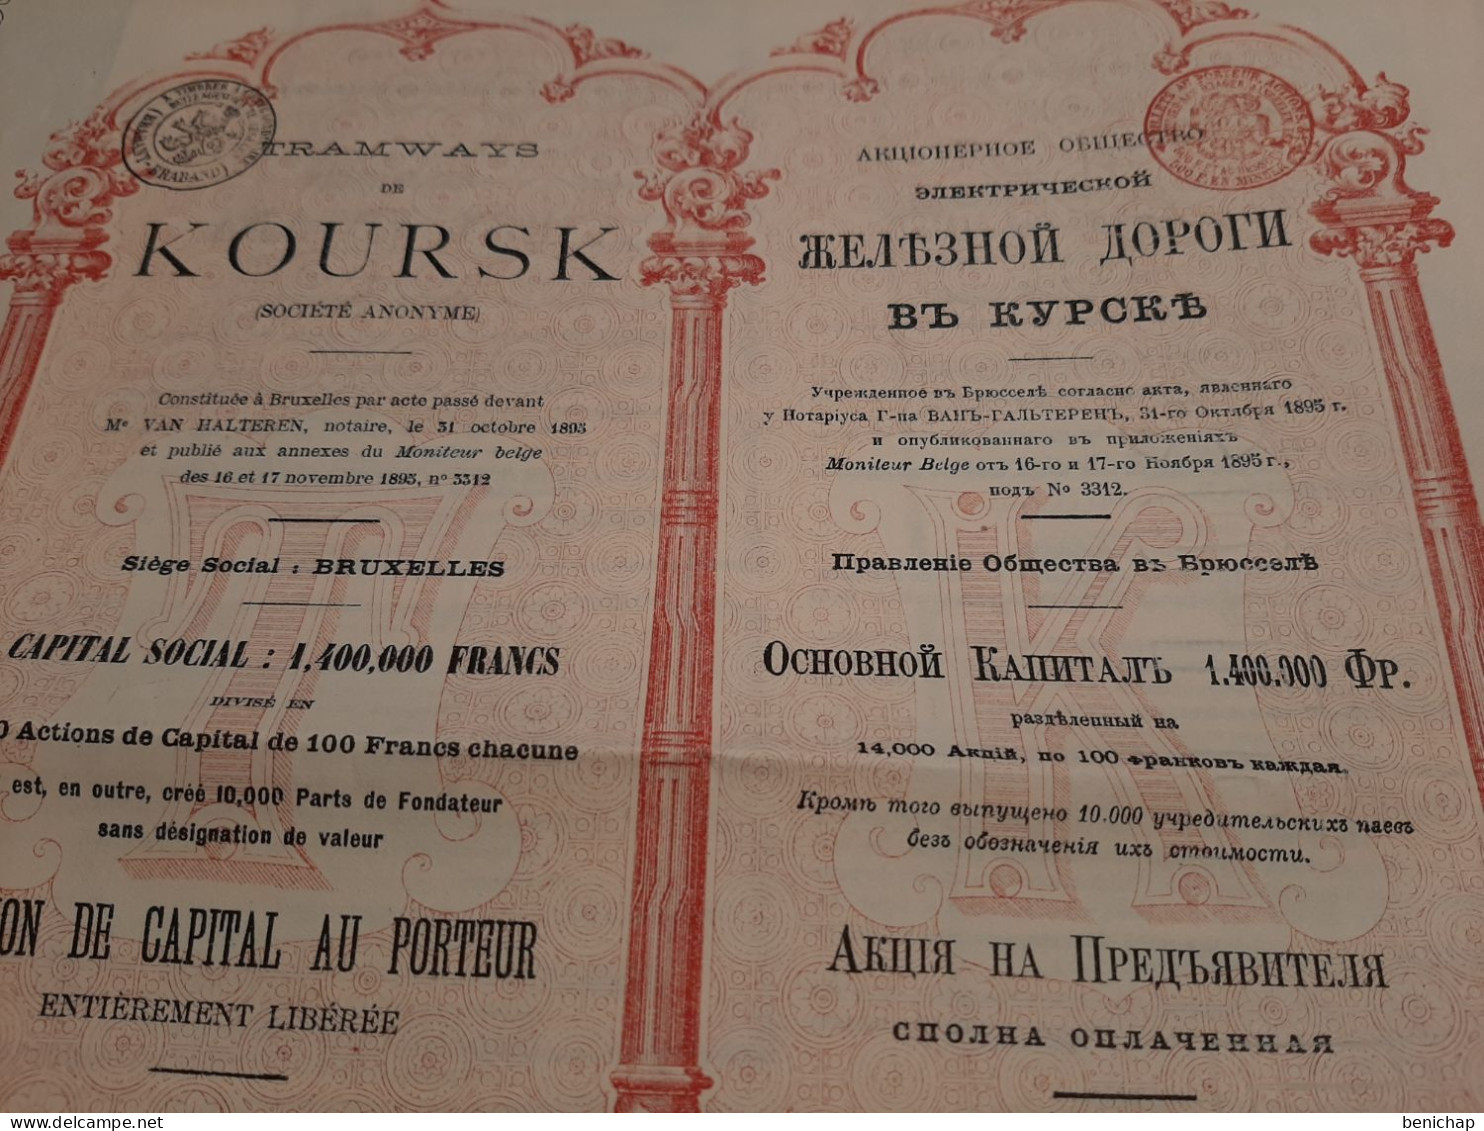 Société Anonyme Des Tramways De Koursk - Russie - Action De Capital Au Porteur - Bruxelles Le 10 Décembre 1895. - Spoorwegen En Trams